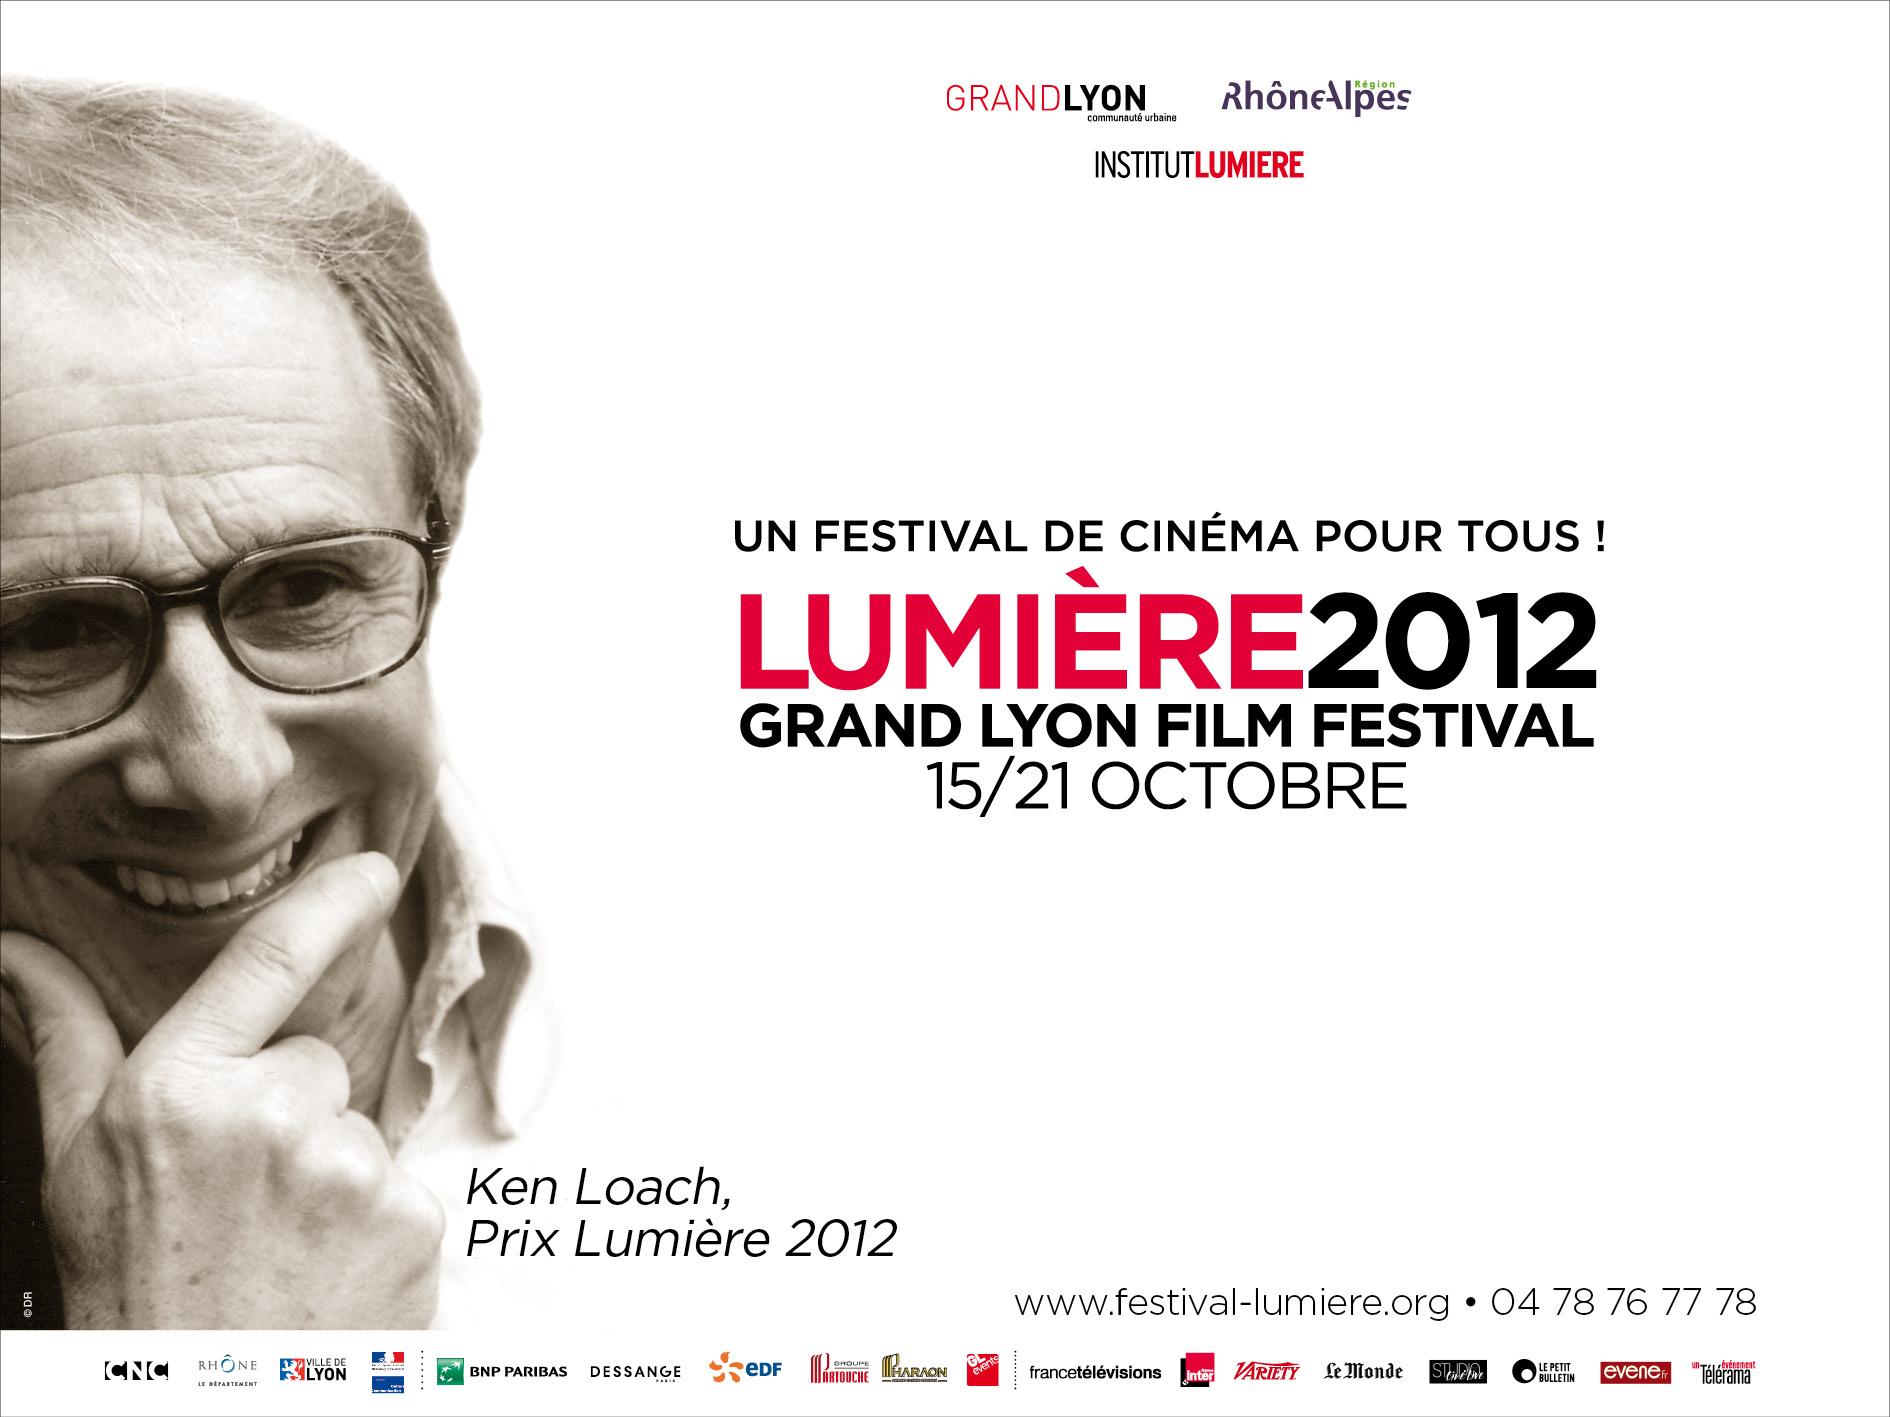 Ken Loach recevra le Prix Lumière 2012